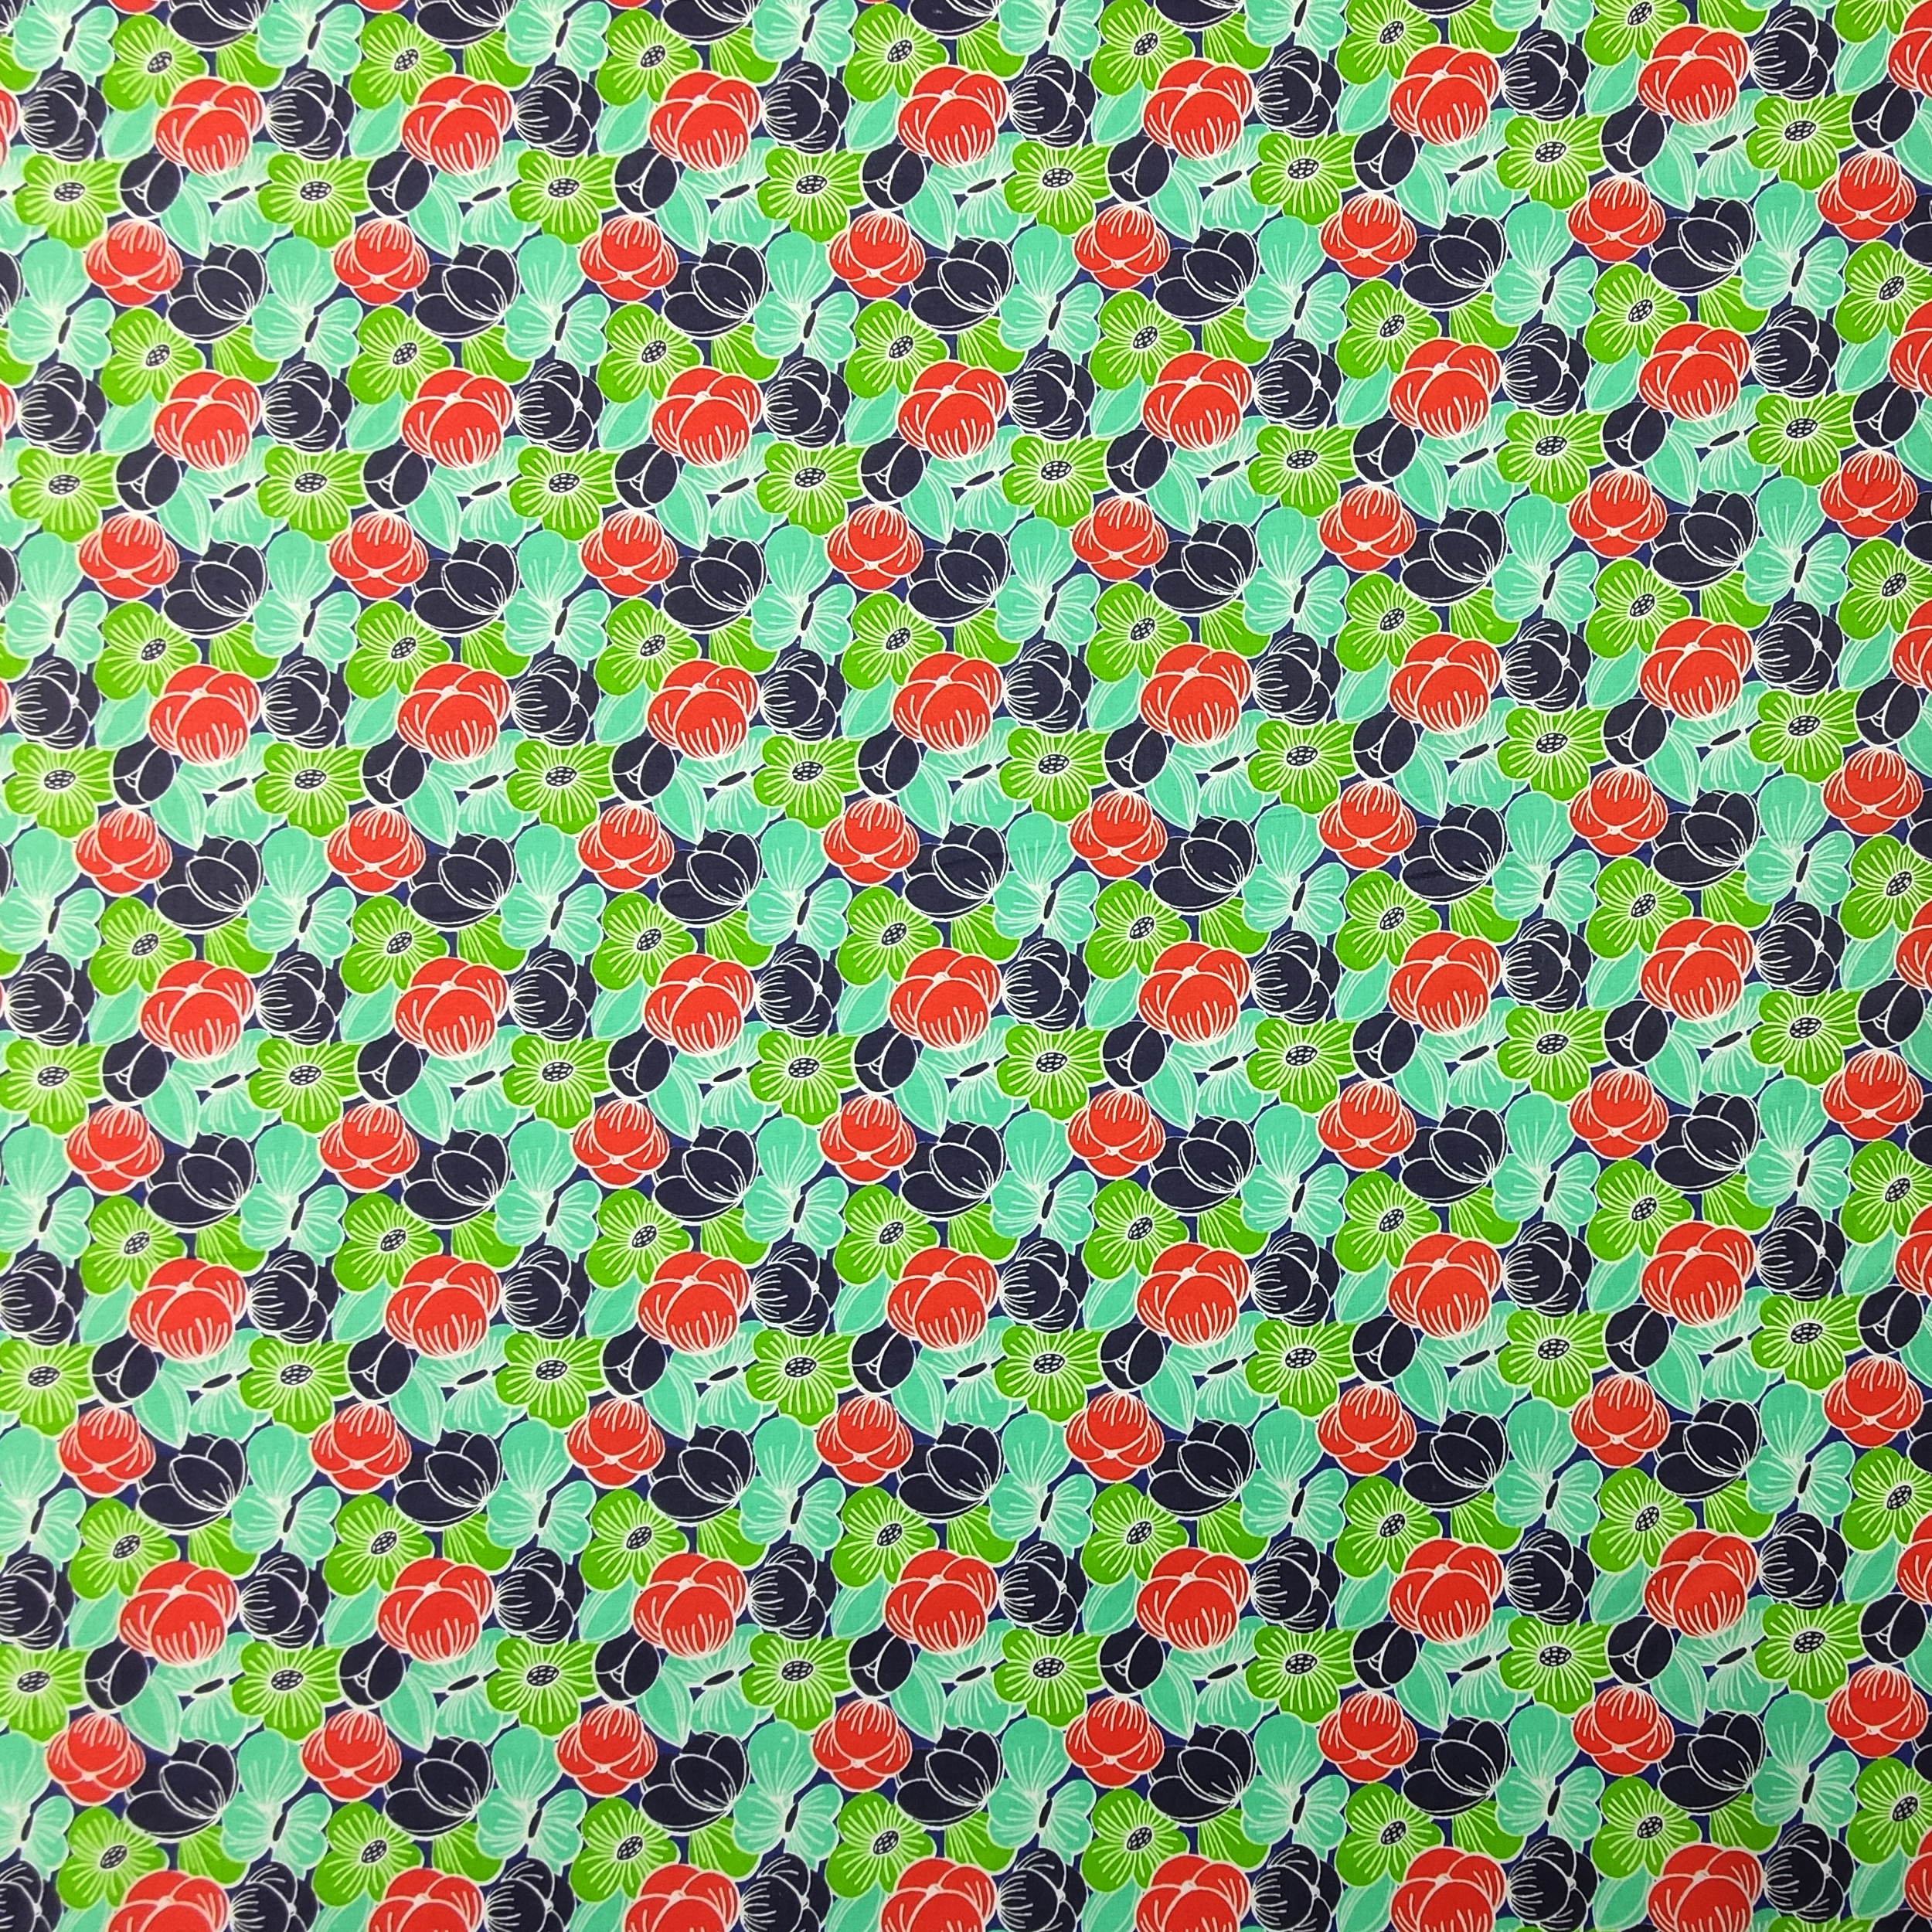 cotone oeko-tex con fiori verdi e rossi